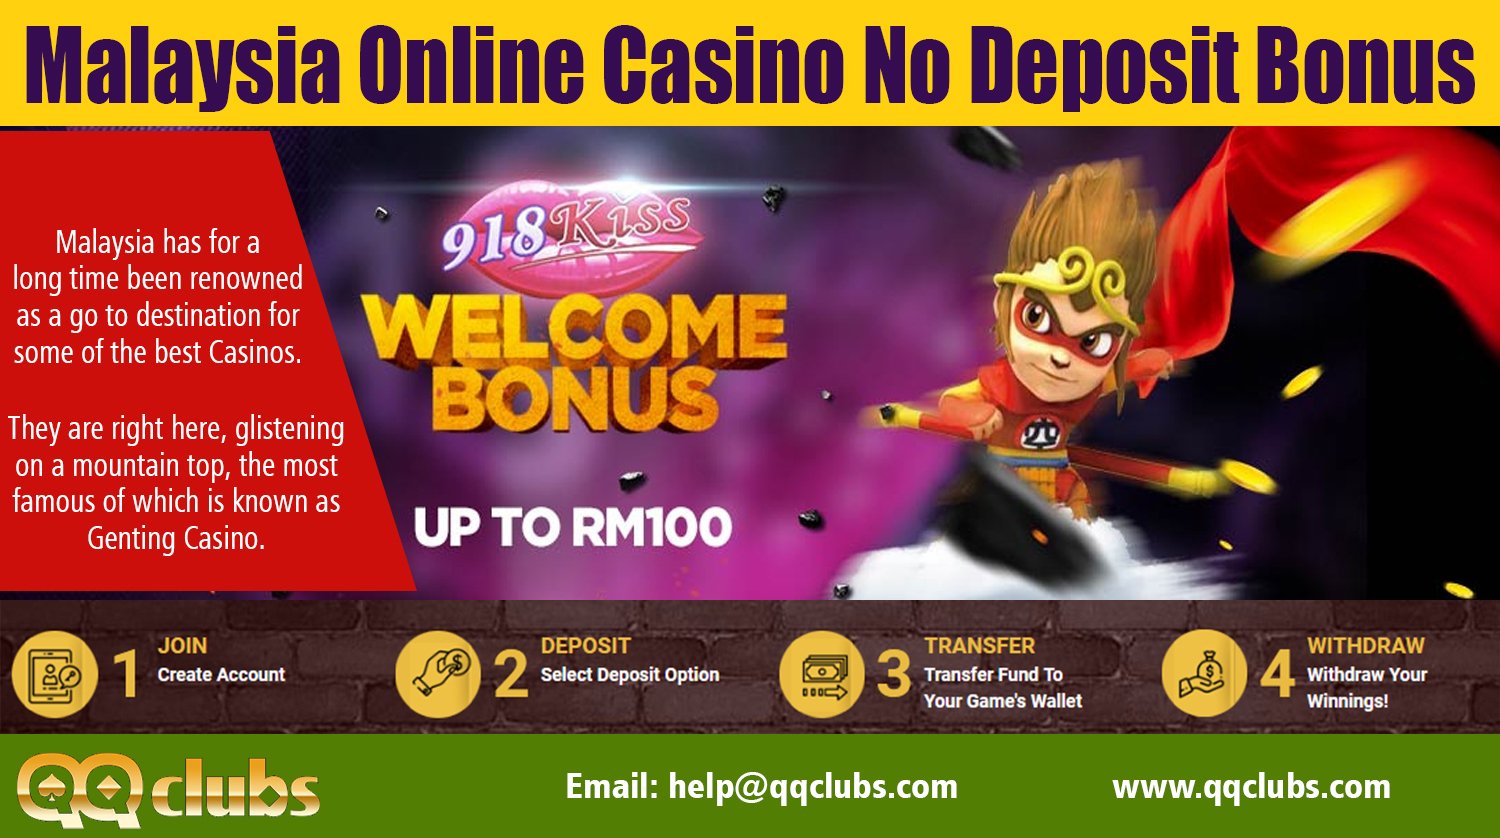 Online casino malaysia 2019 free credit post бесплатный игровой автомат золото партии ссср